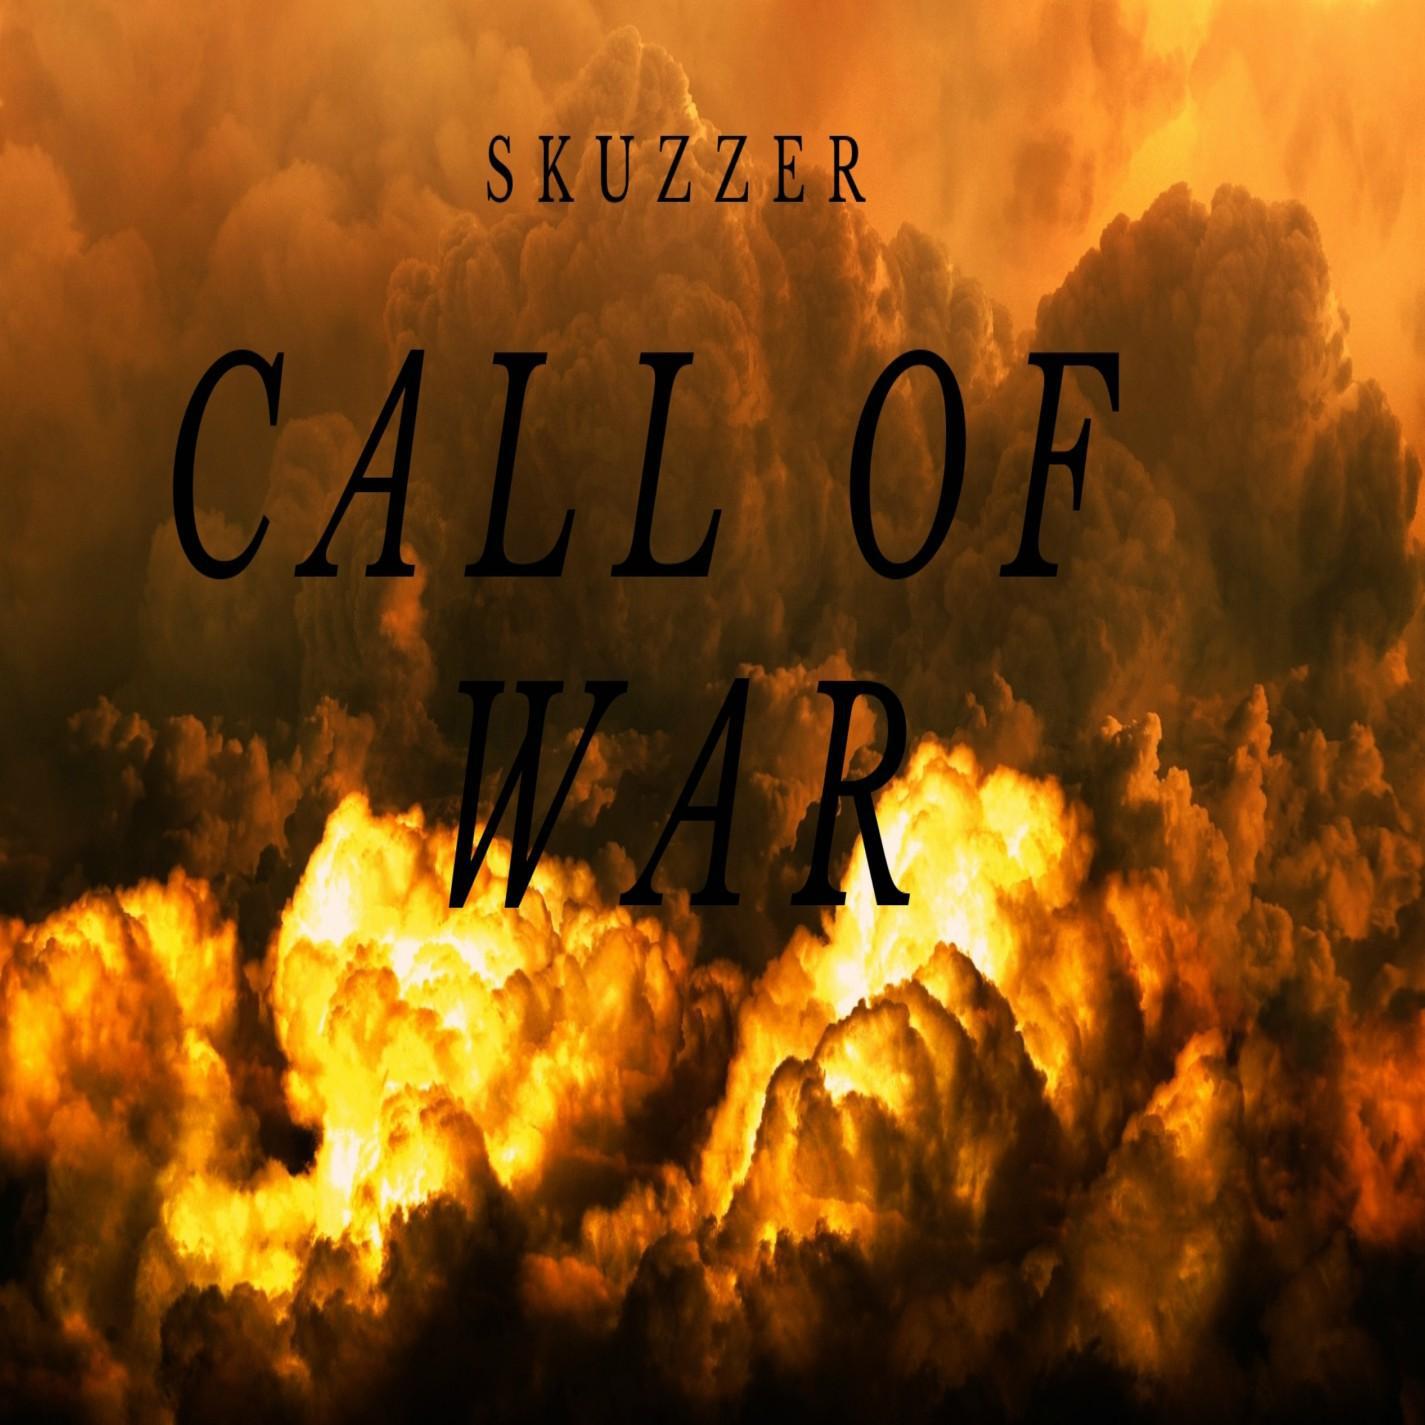 Call of War